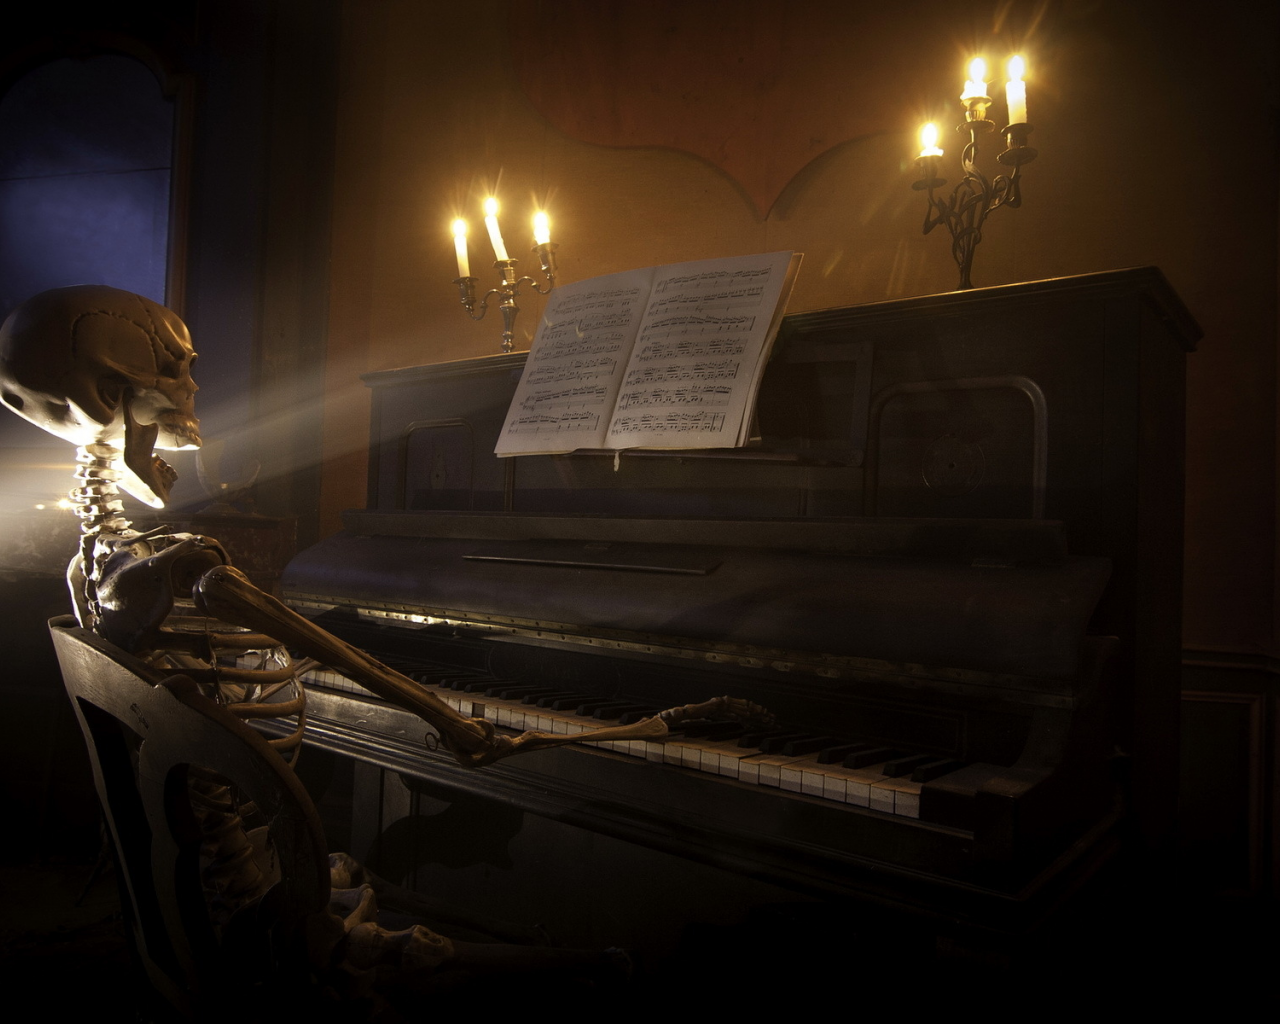 Фон, чёрный, пианино, скелет.